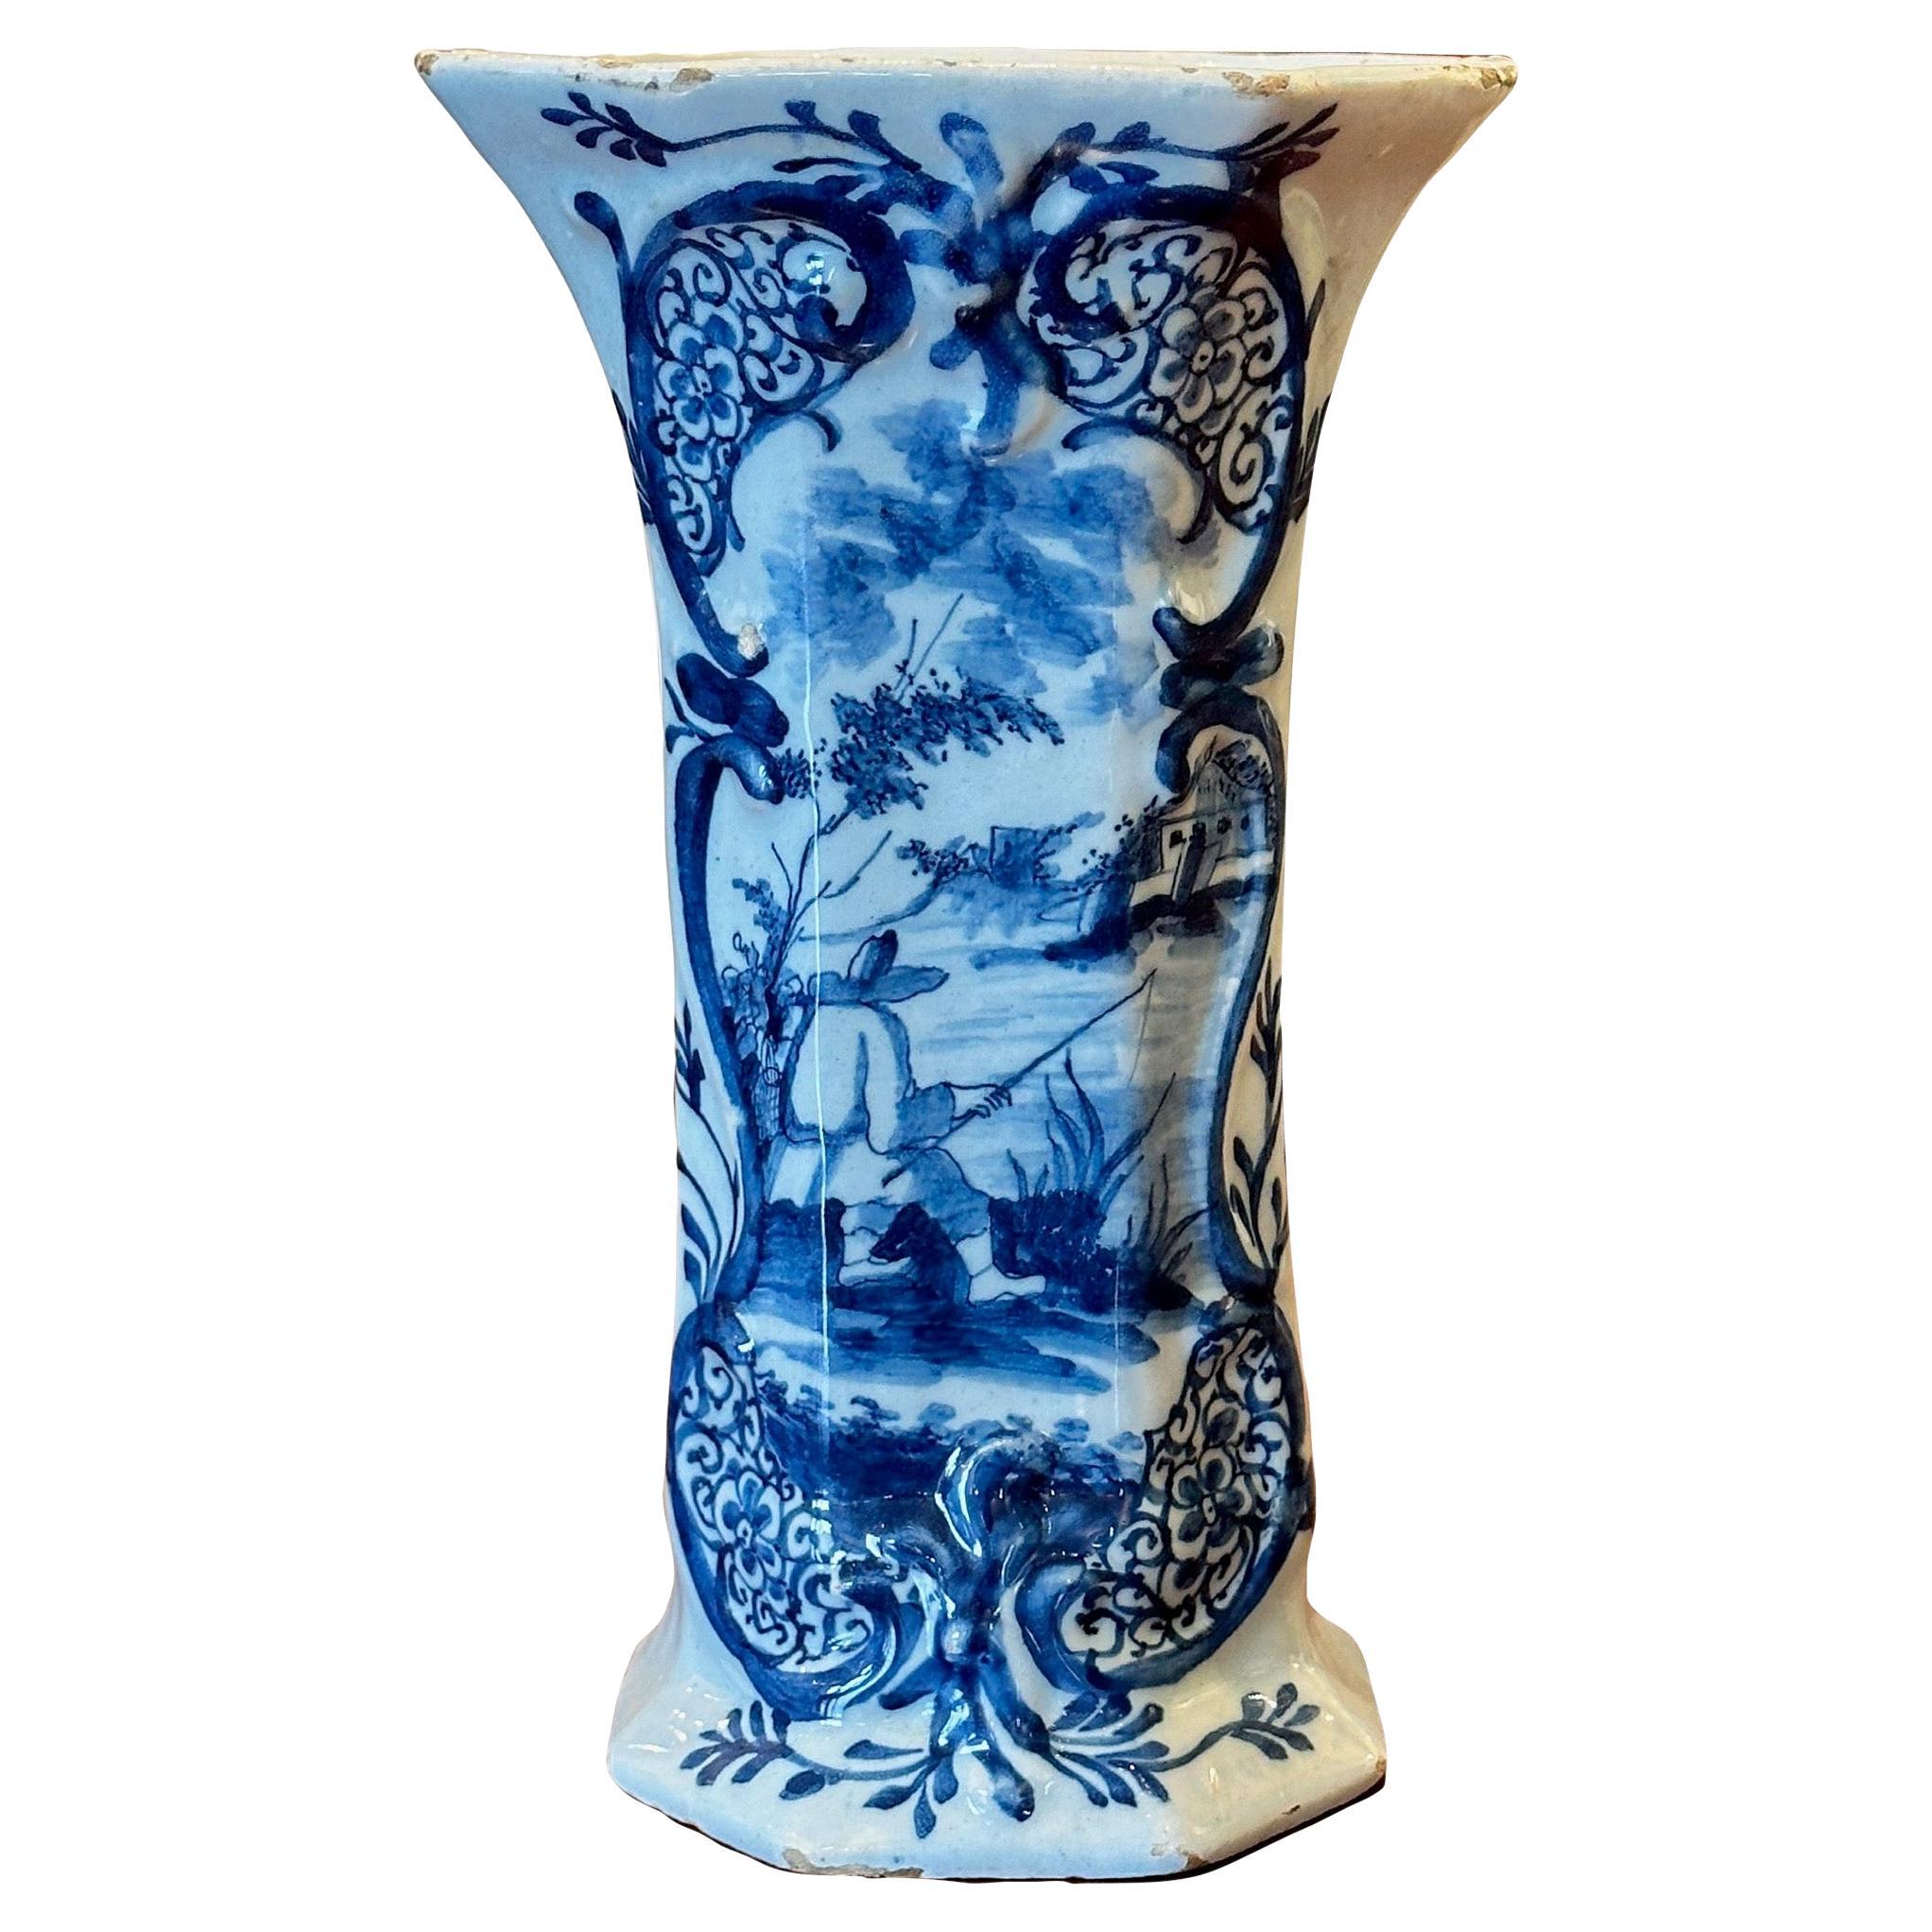 Vase de Delft du 19e siècle